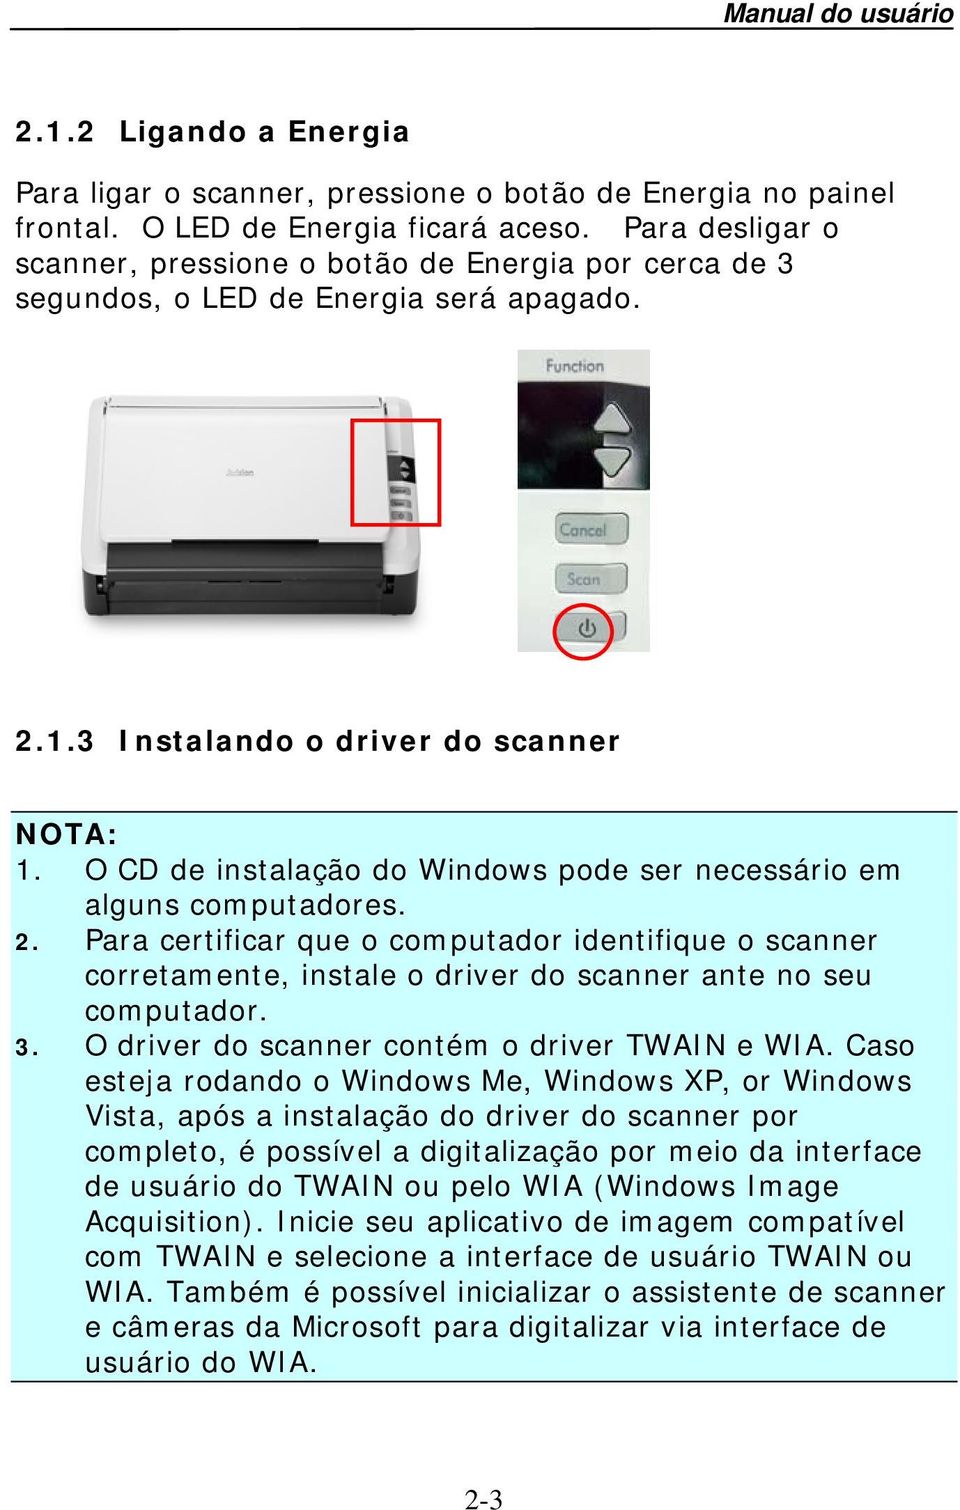 O CD de instalação do Windows pode ser necessário em alguns computadores. 2. Para certificar que o computador identifique o scanner corretamente, instale o driver do scanner ante no seu computador. 3.